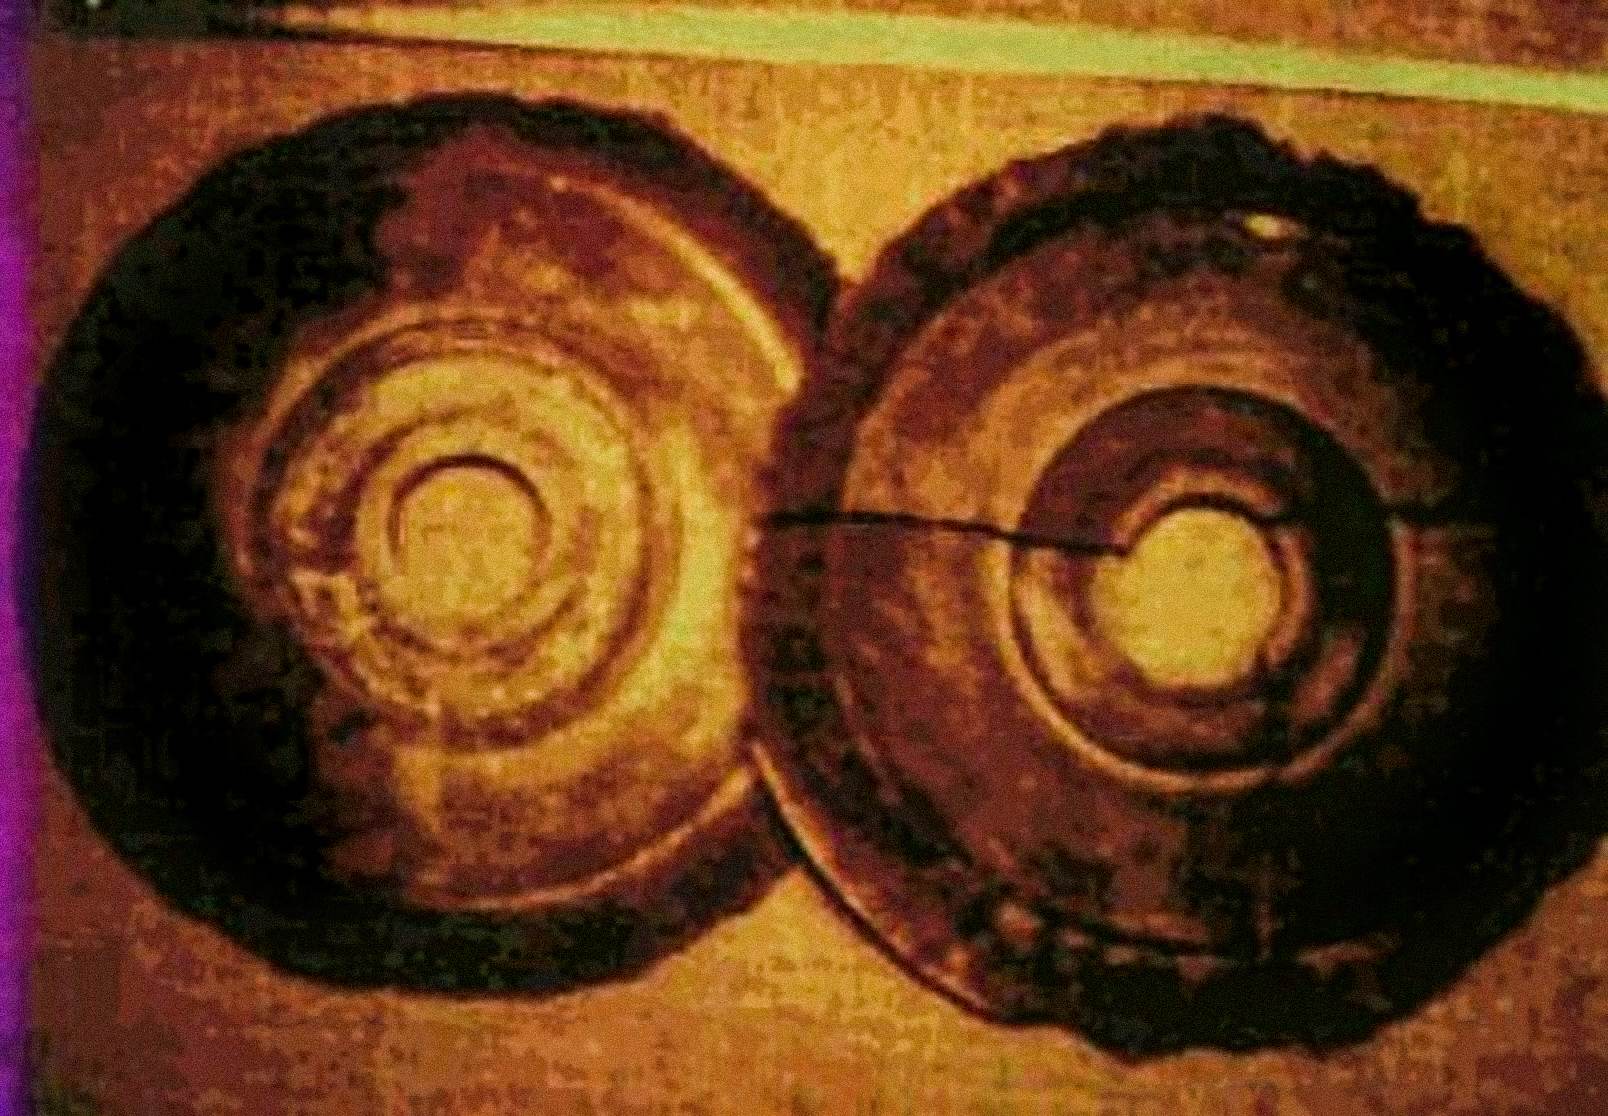 1974-ben Ernst Wegerer osztrák mérnök két olyan lemezt fényképezett le, amelyek megfeleltek a Dropa Stones leírásának. A Xian-i Banpo-Múzeumban vezetett bejáráson volt, amikor meglátta a kiállított kőkorongokat. Azt állítja, hogy minden korong közepén egy lyukat látott, és hieroglifákat a részben morzsolódott spirálszerű barázdákban.